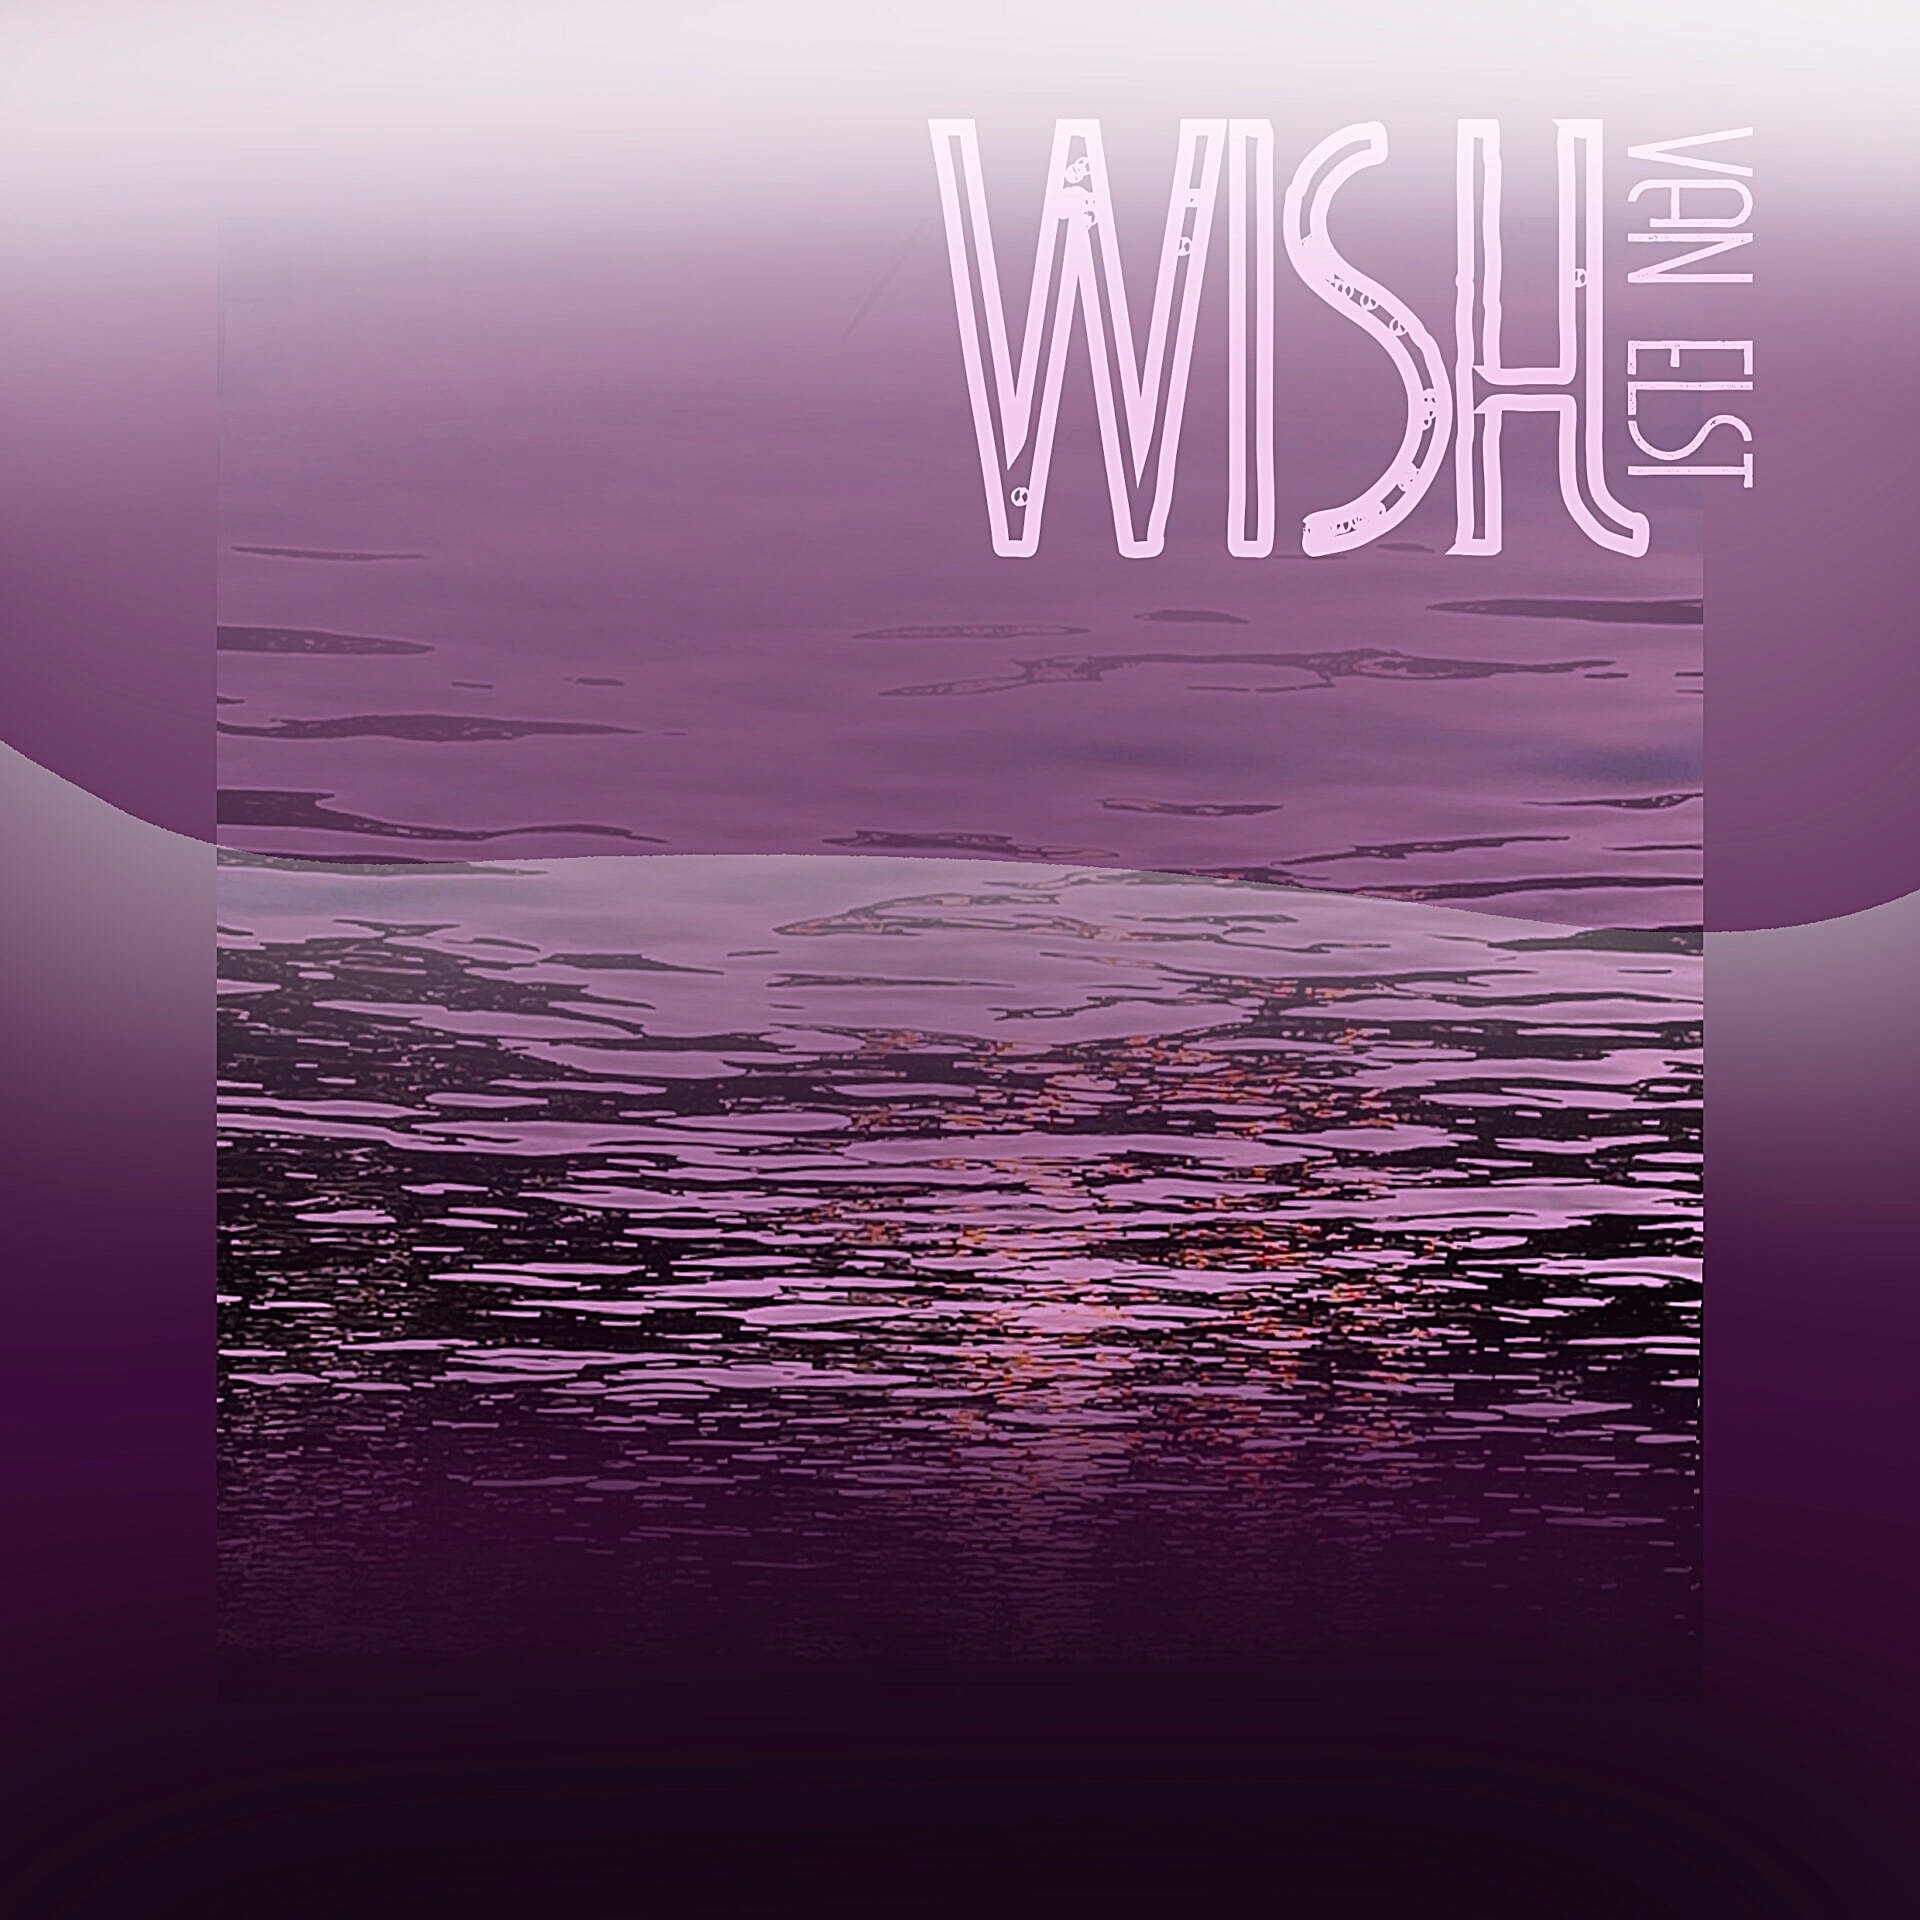 Van Elst - WISH Article Image - SONO Music Press Release